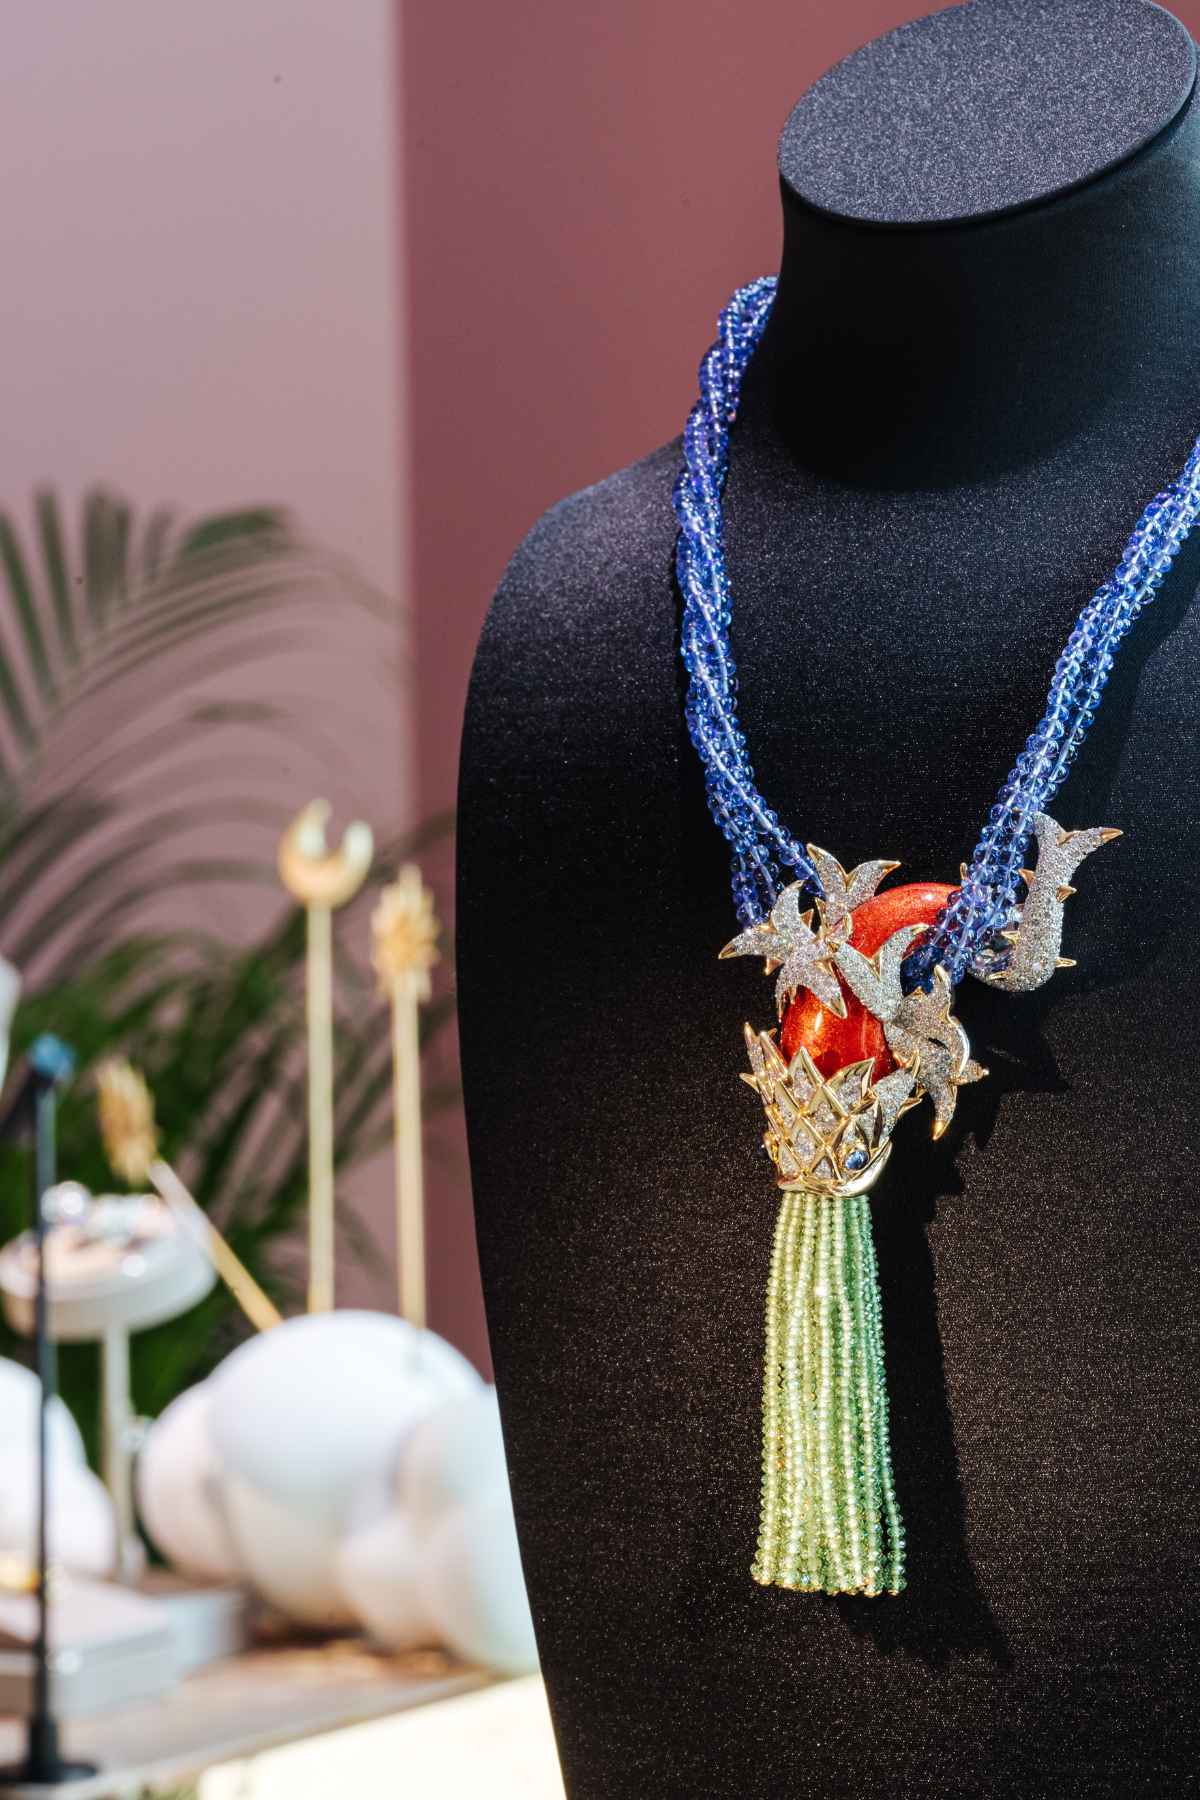 Tiffany & Co. Showcases Over 200 High Jewelry Designs In Dubai